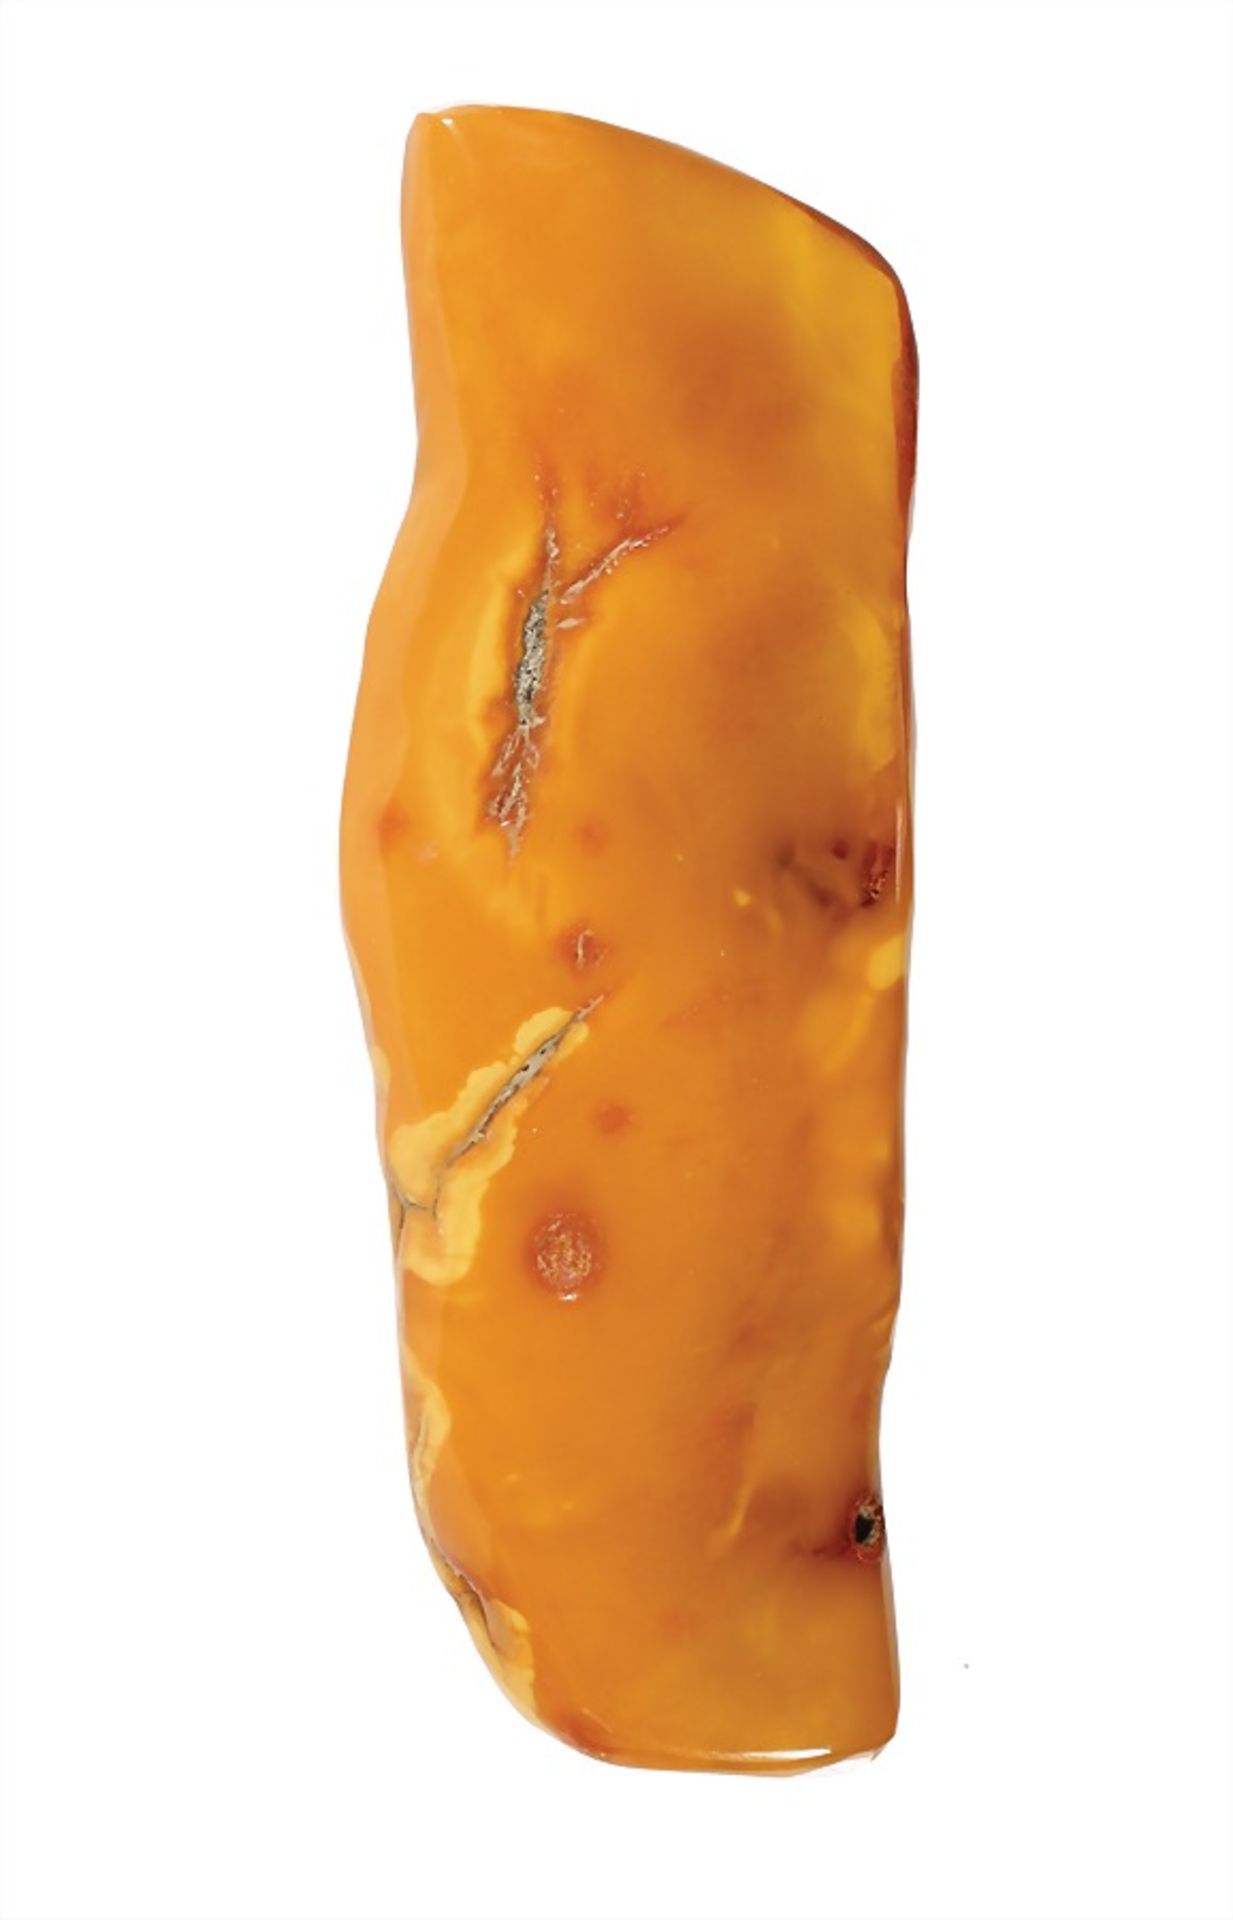 elongate item: amber "BUTTERSCOTCH", 117.2 x 40.4 x 14.8 mm, total 48.7 g